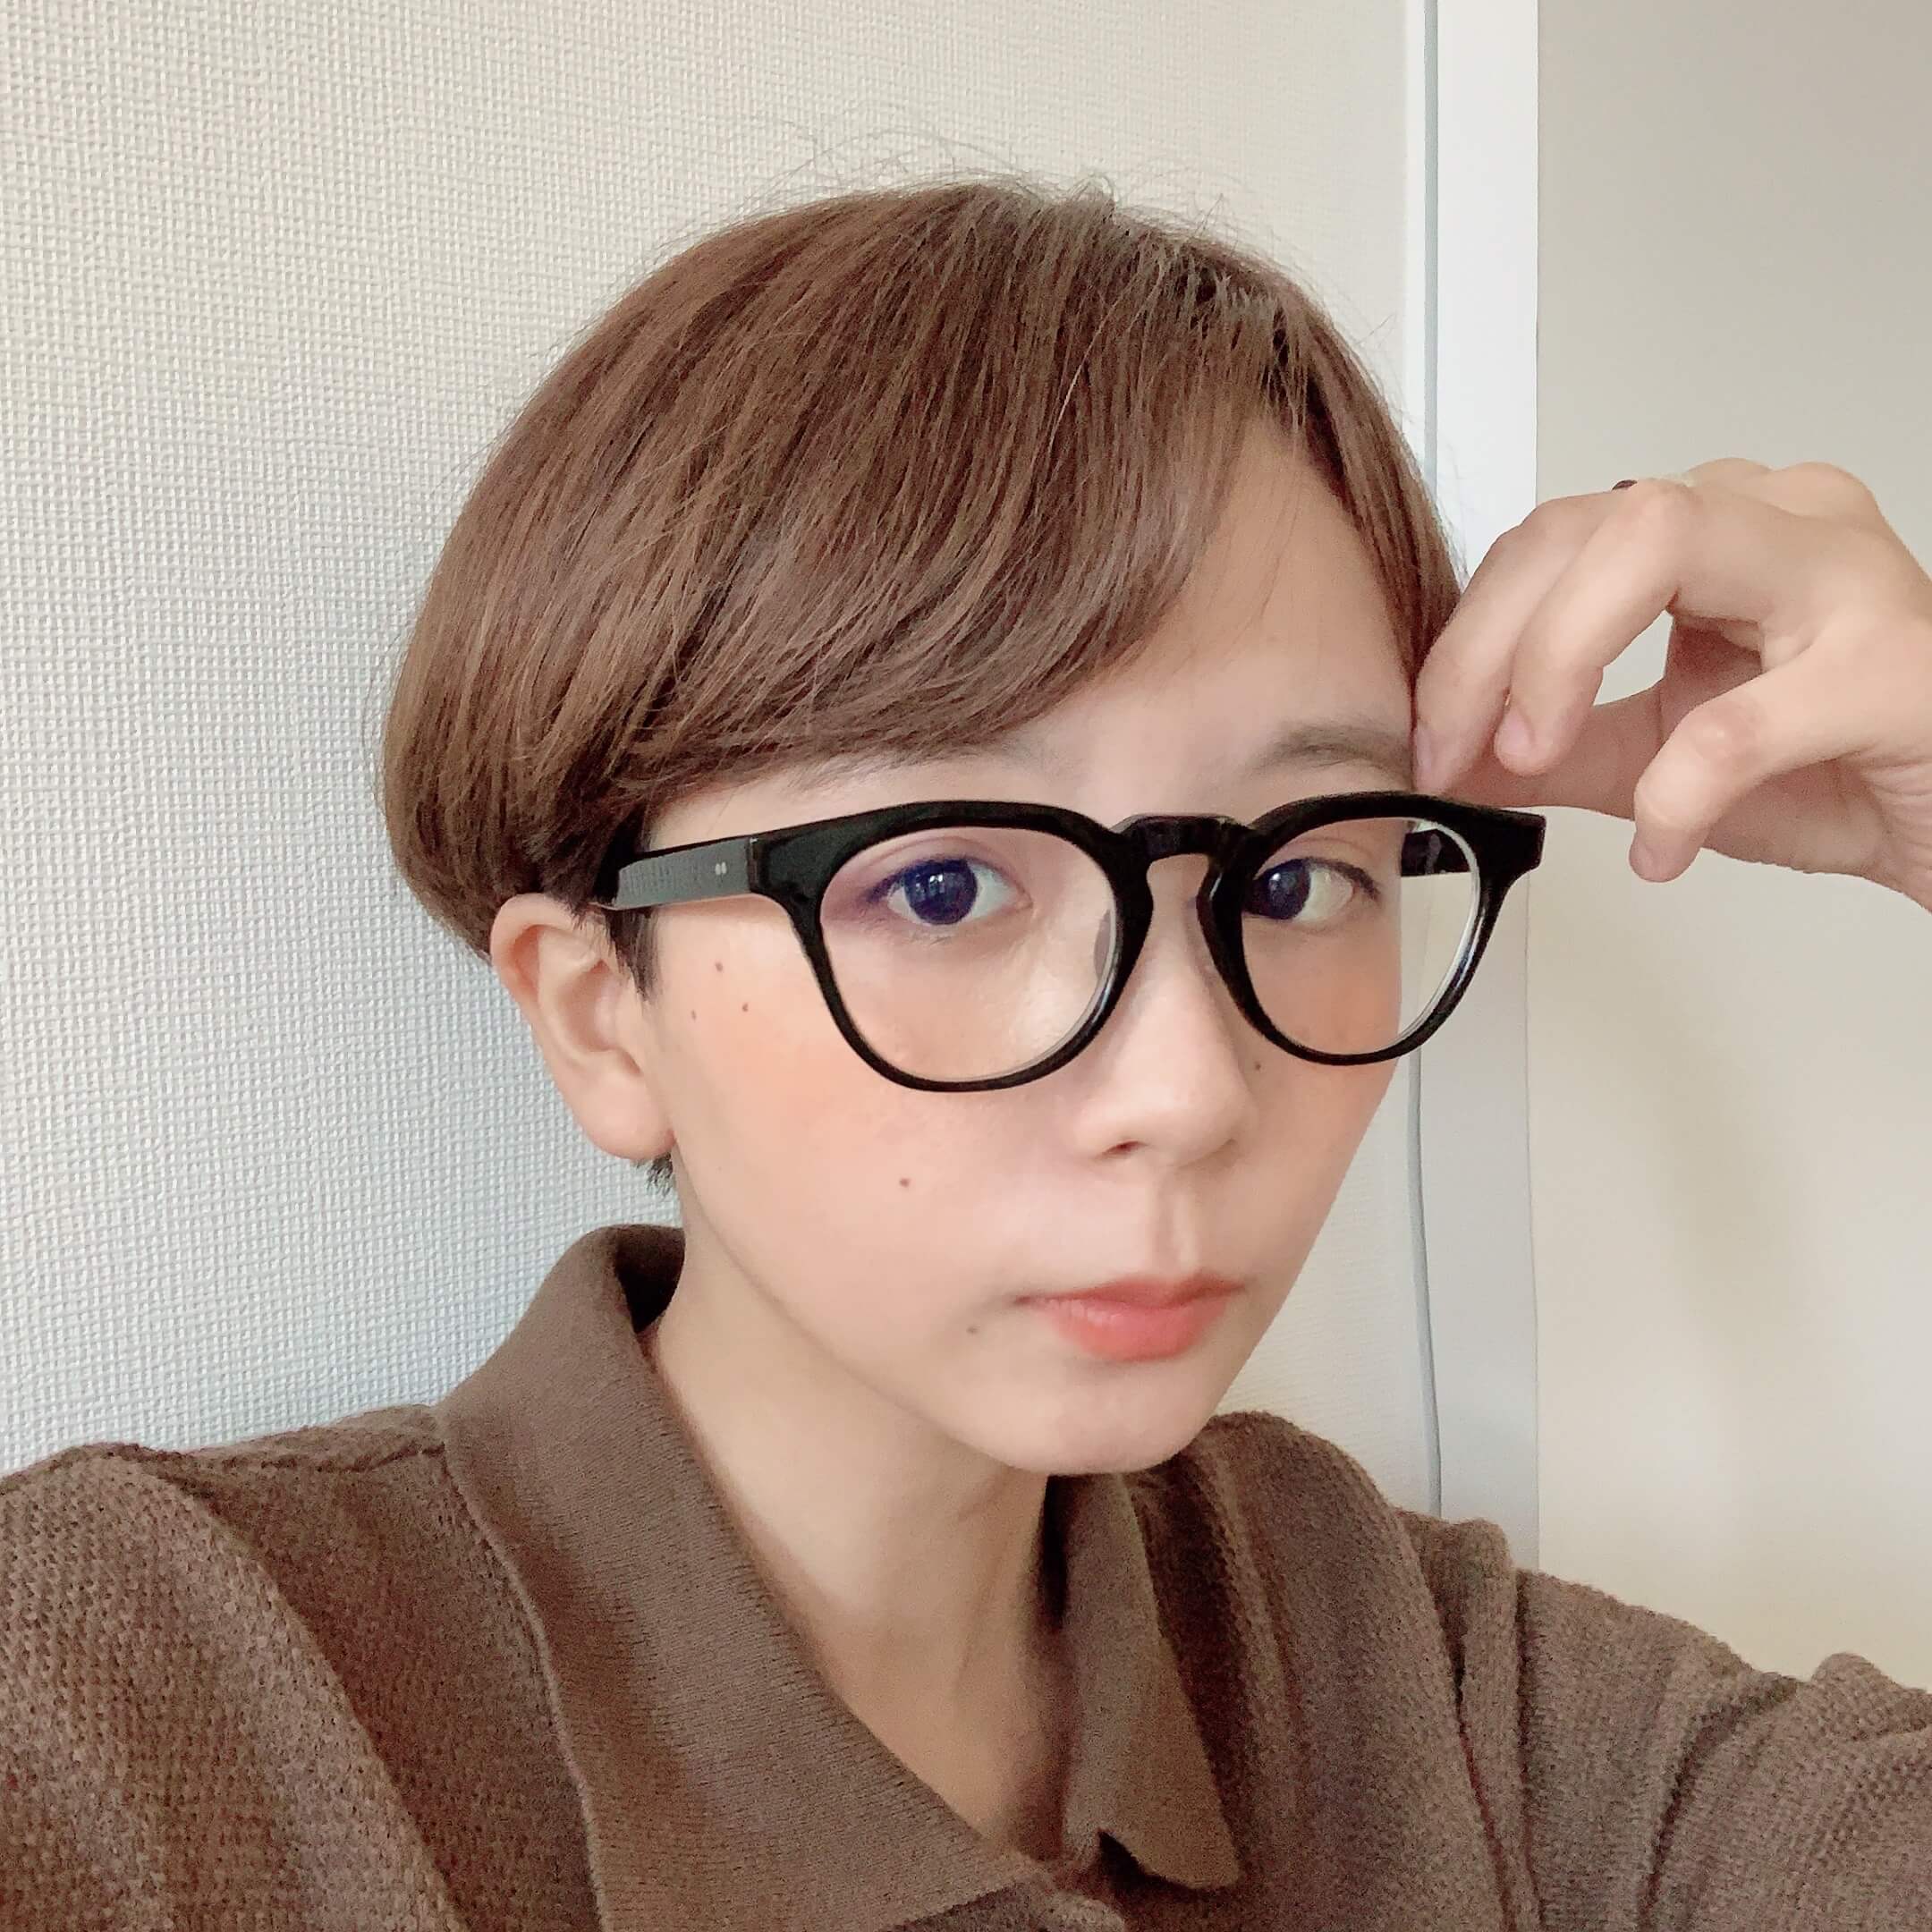 鼻が高くみえるメガネを買いました Fudgena Specialist Kinokoのボーイズスタイルvol 28 ファッション Fudgena ファッジーナ Fudge Jp